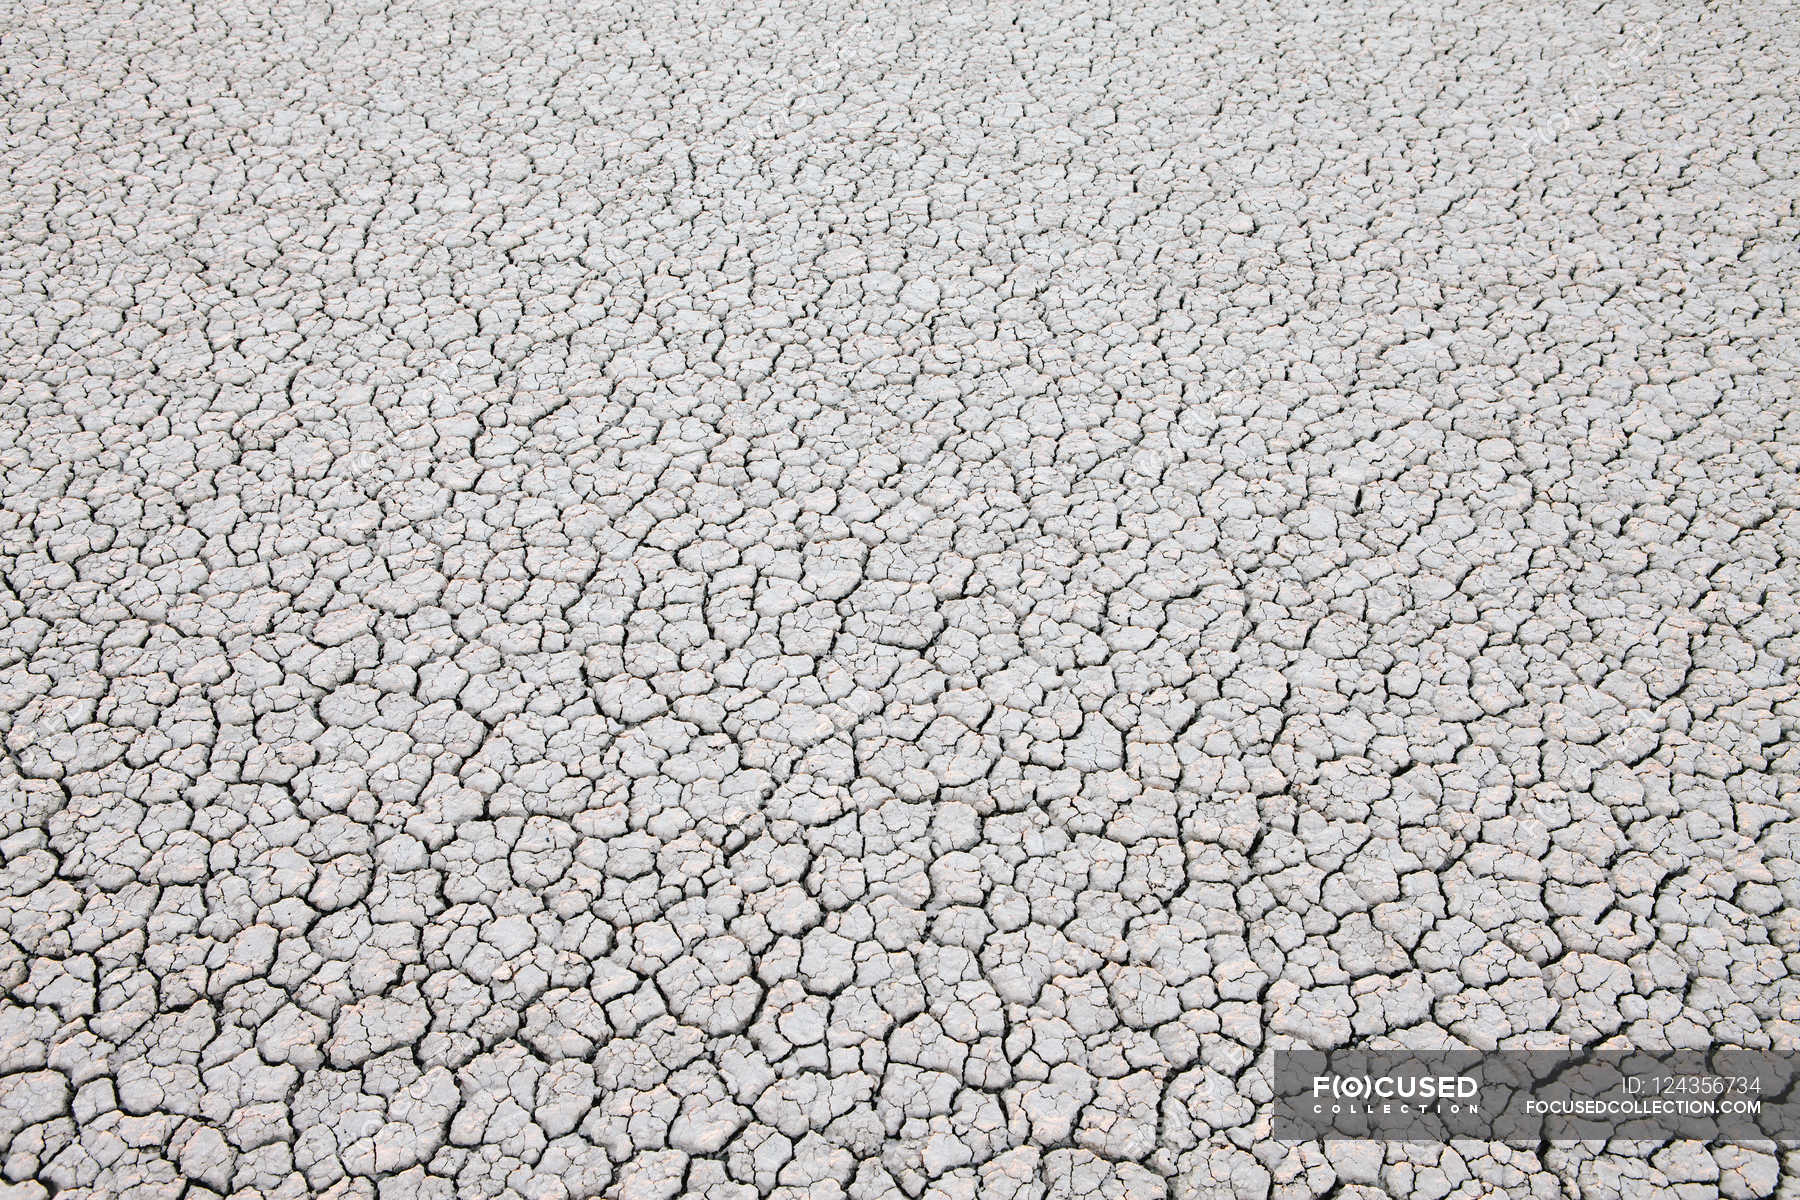 Dry cracked desert surface — Stock Photo | #124356734